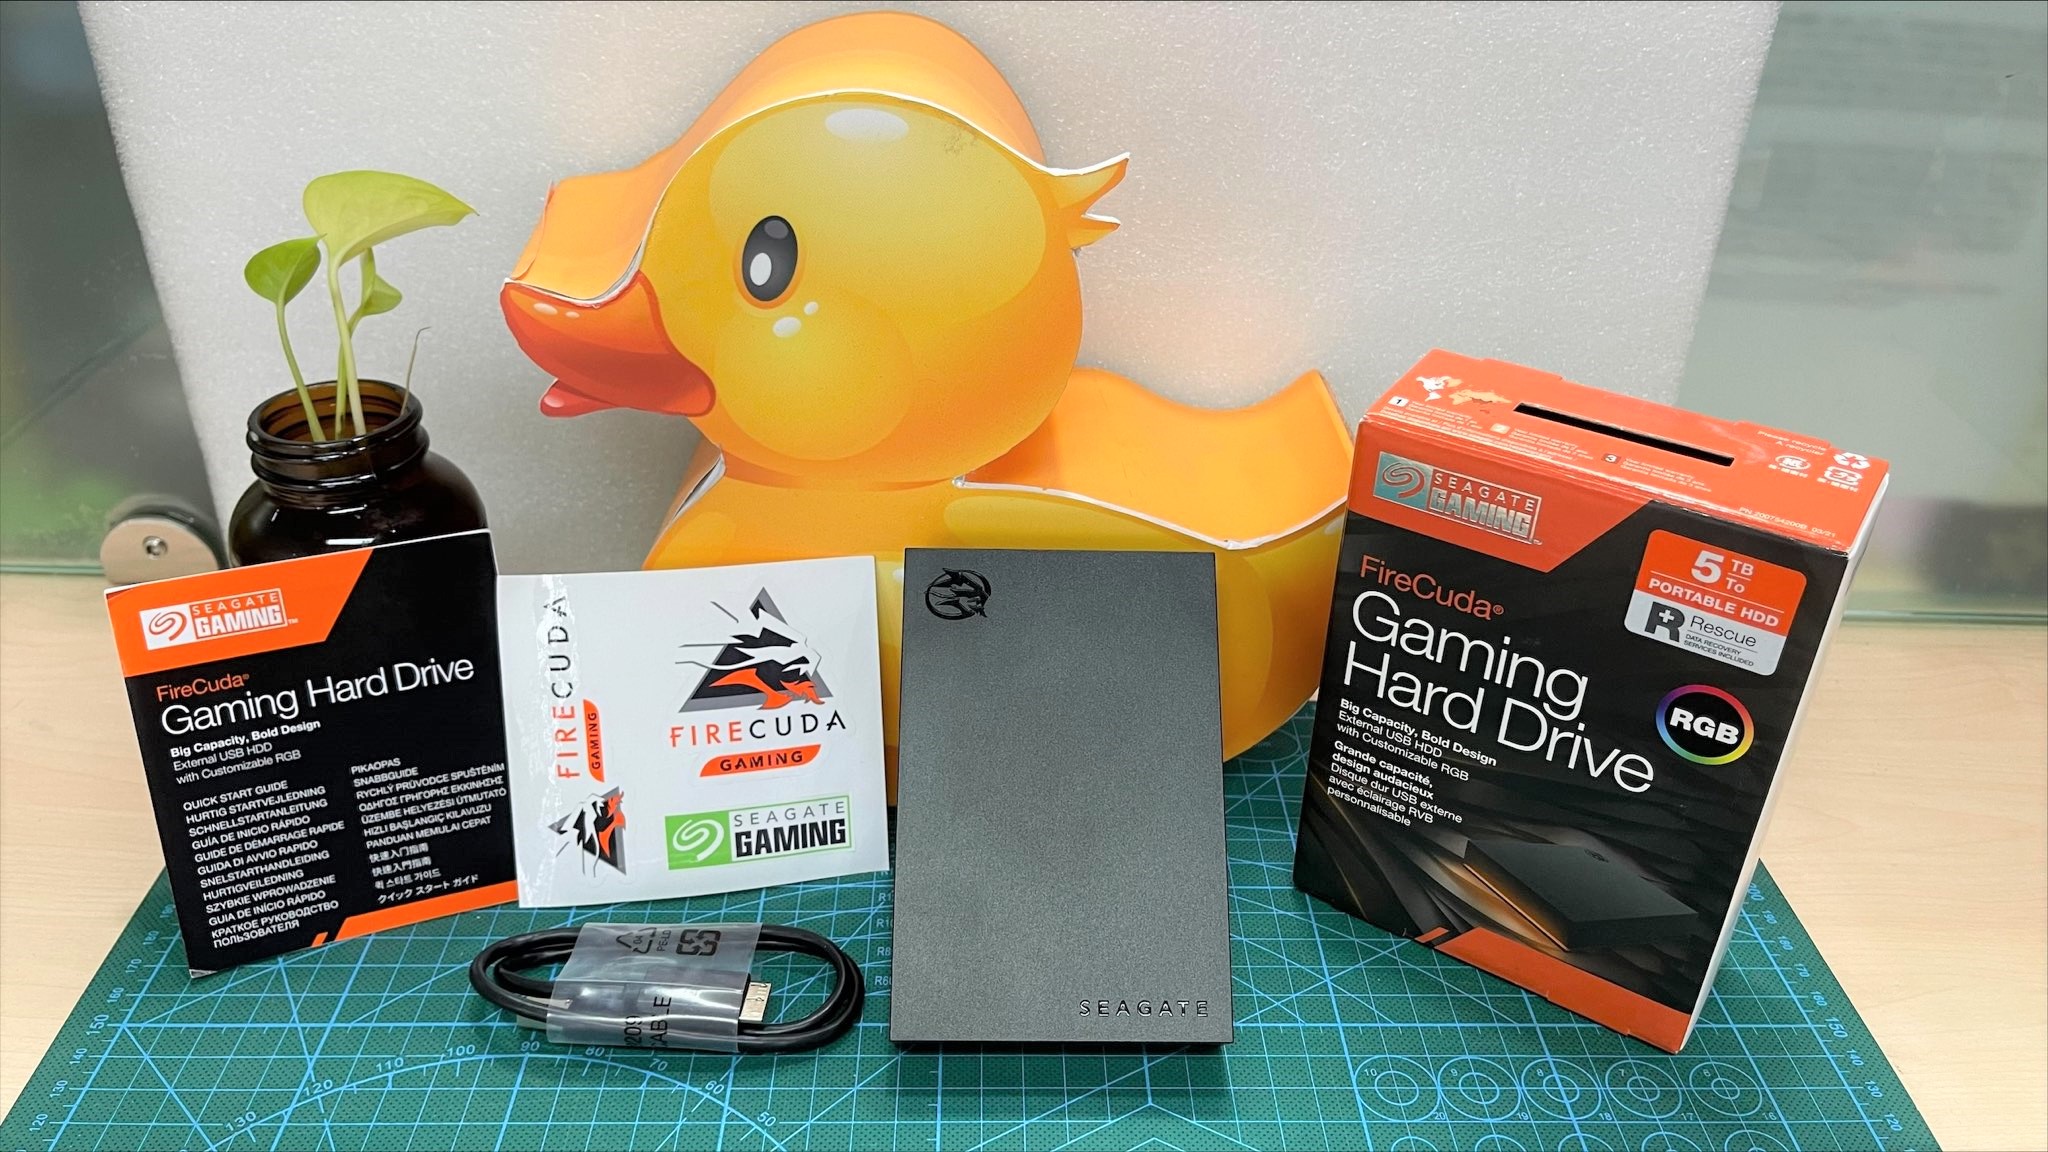 Firecuda Gaming HDD 5TB: Ổ cứng dung lượng cao, thiết kế tối giản với LED RGB dành cho game thủ